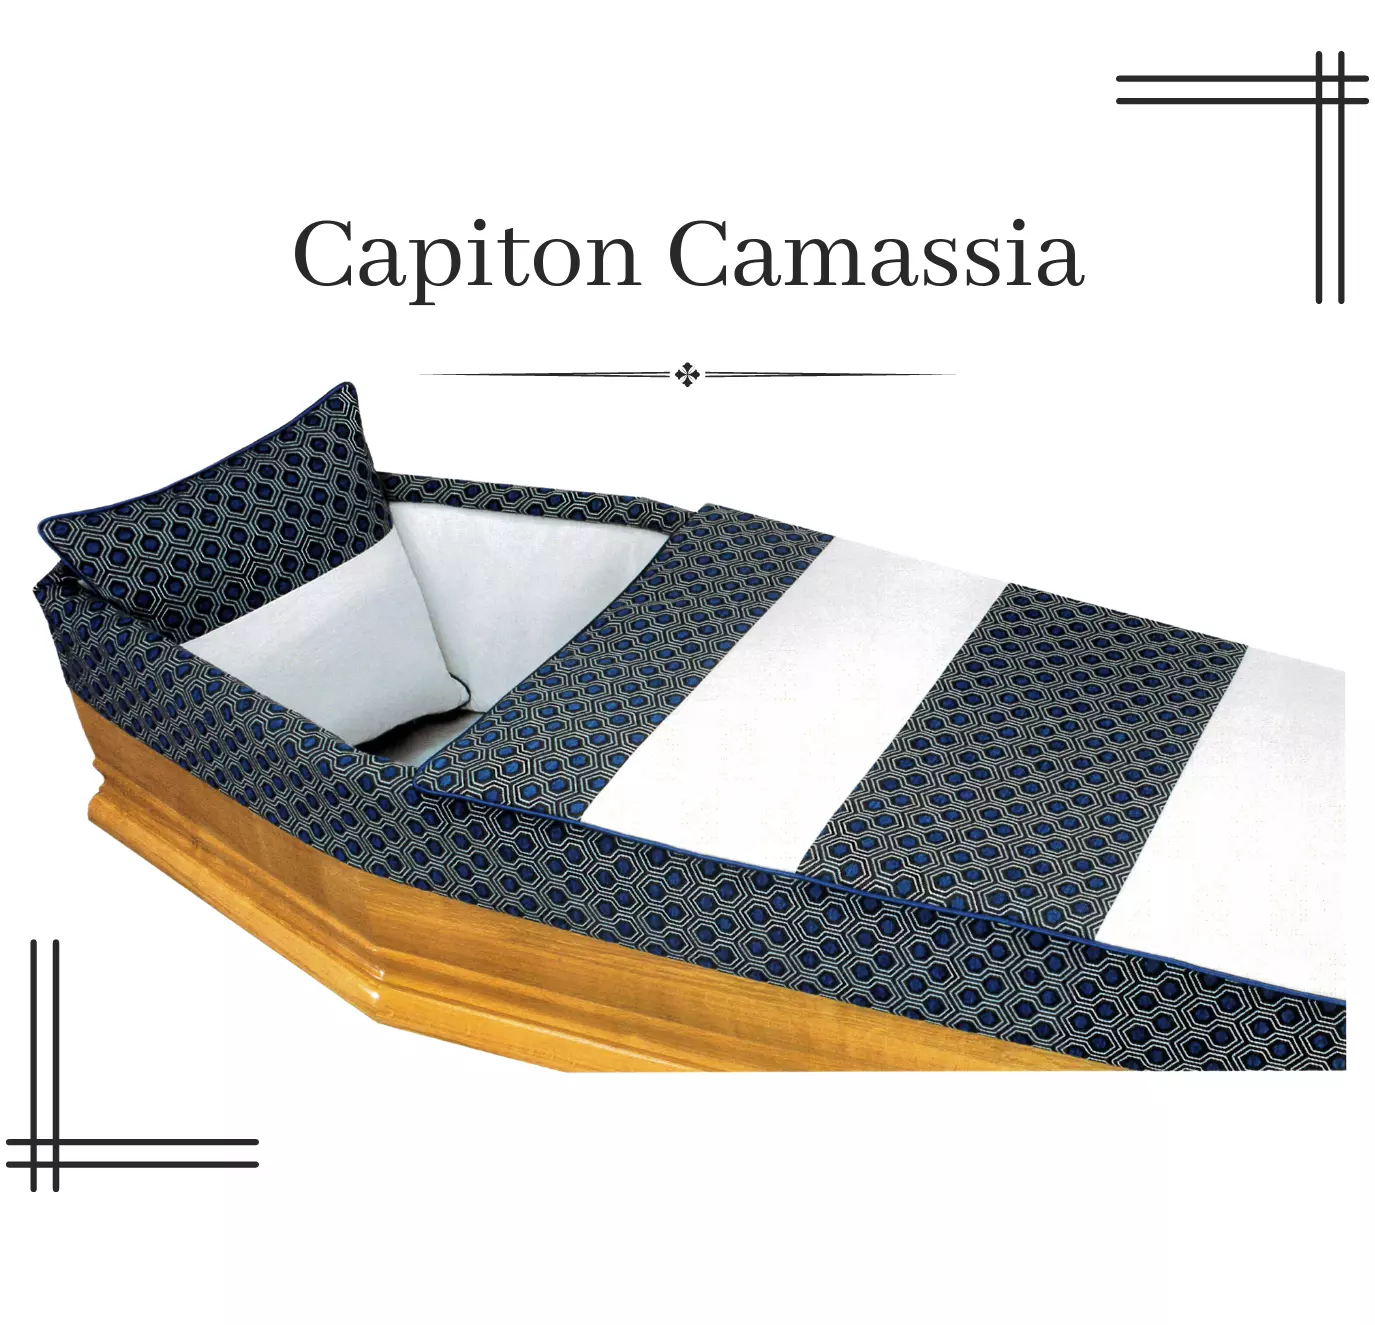 Capiton Camassia